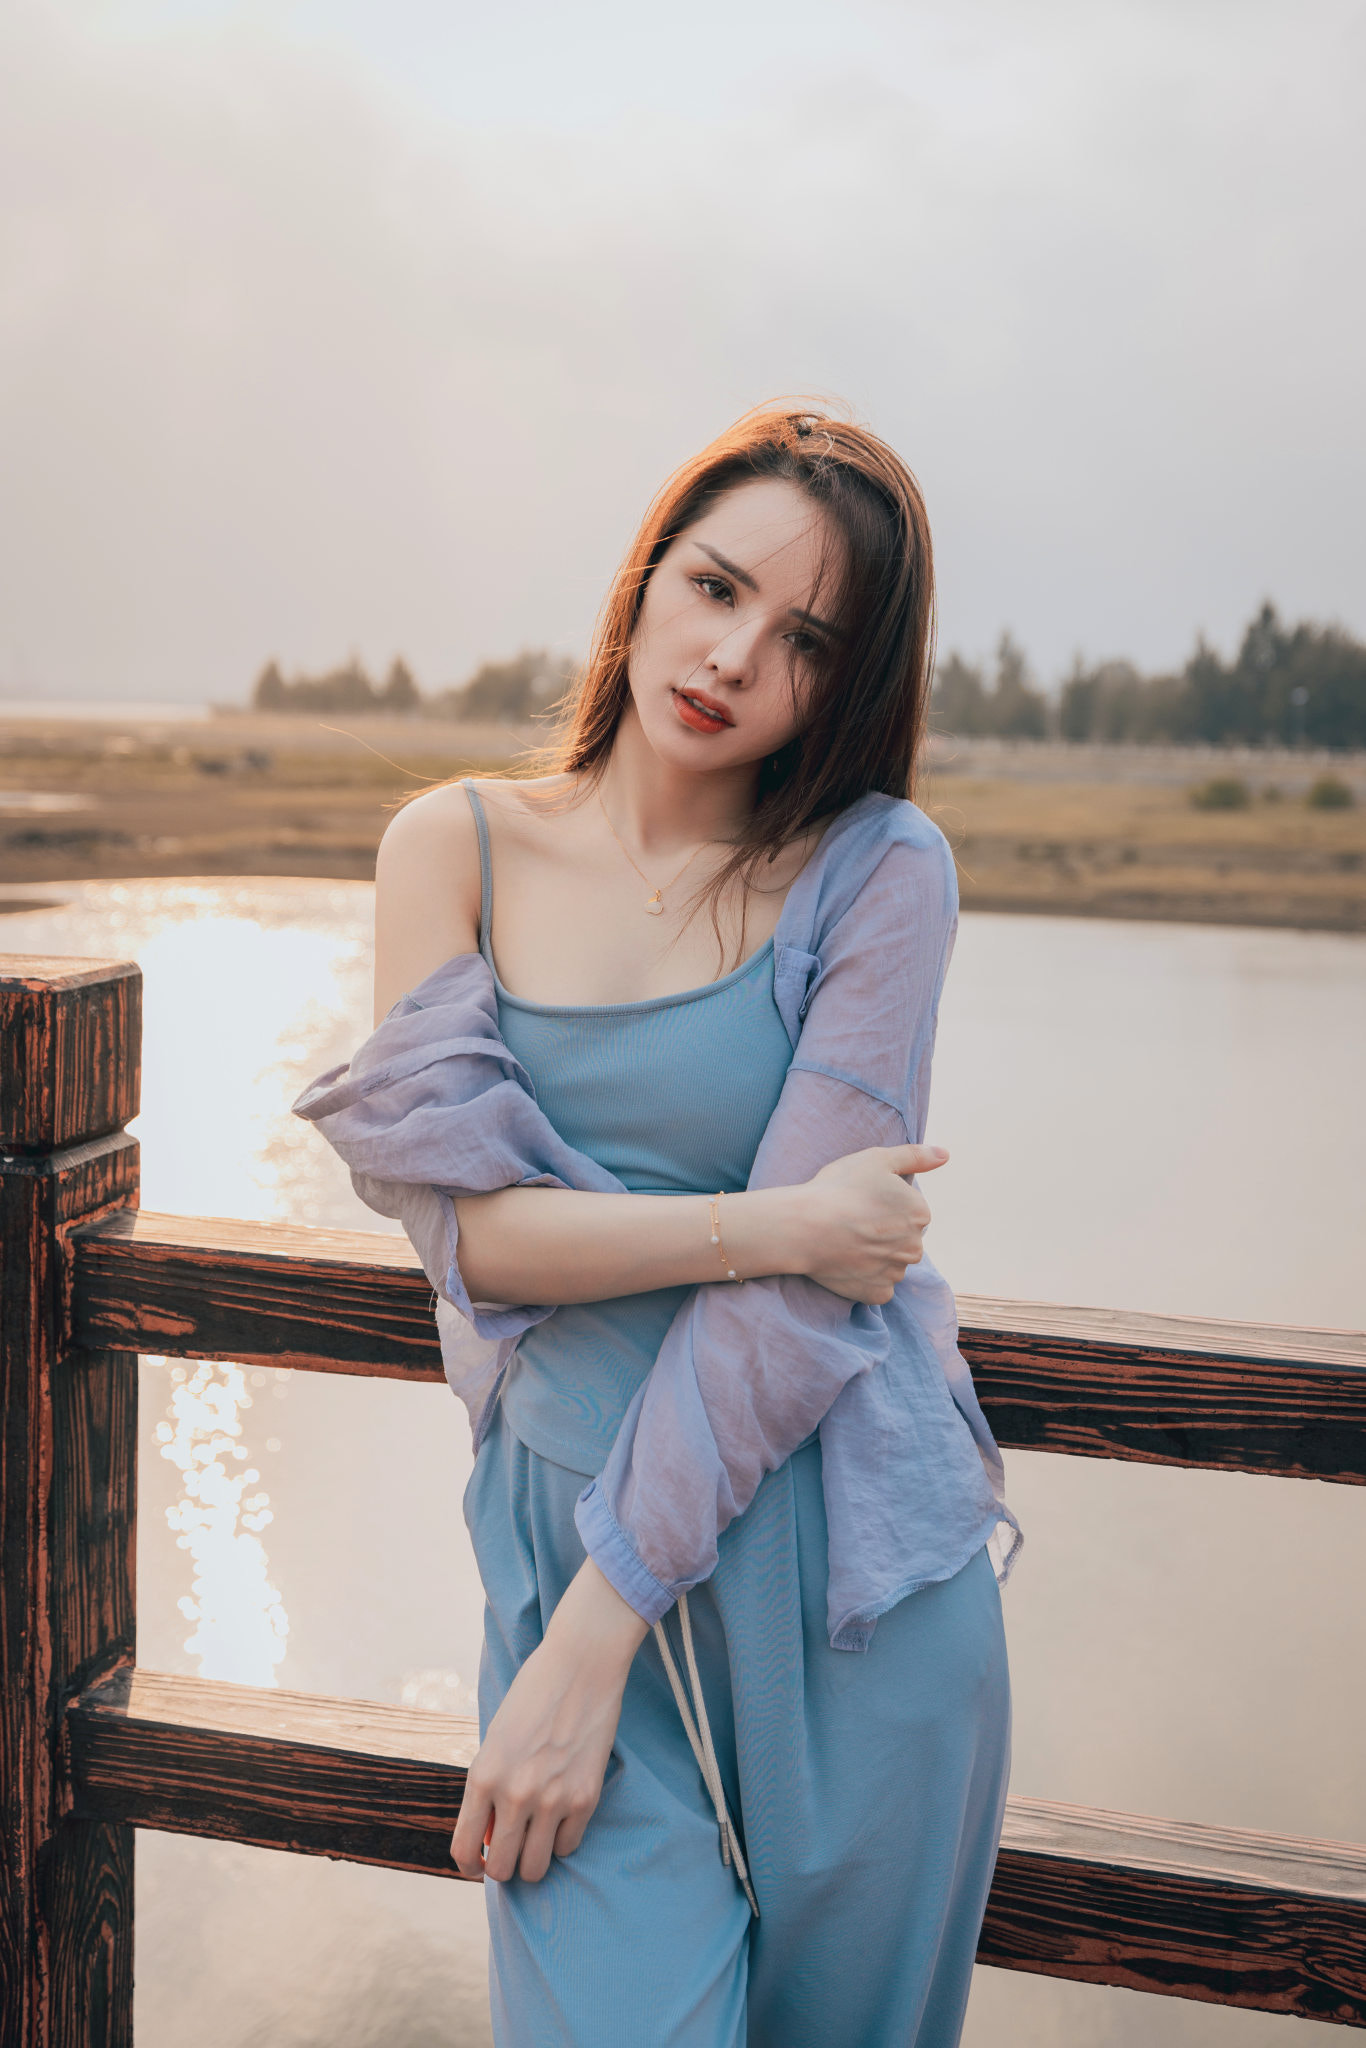 Qin Xiaoqiang Women Brunette Long Hair Straight Hair Blue Clothing Fence Lake Asian 1366x2048